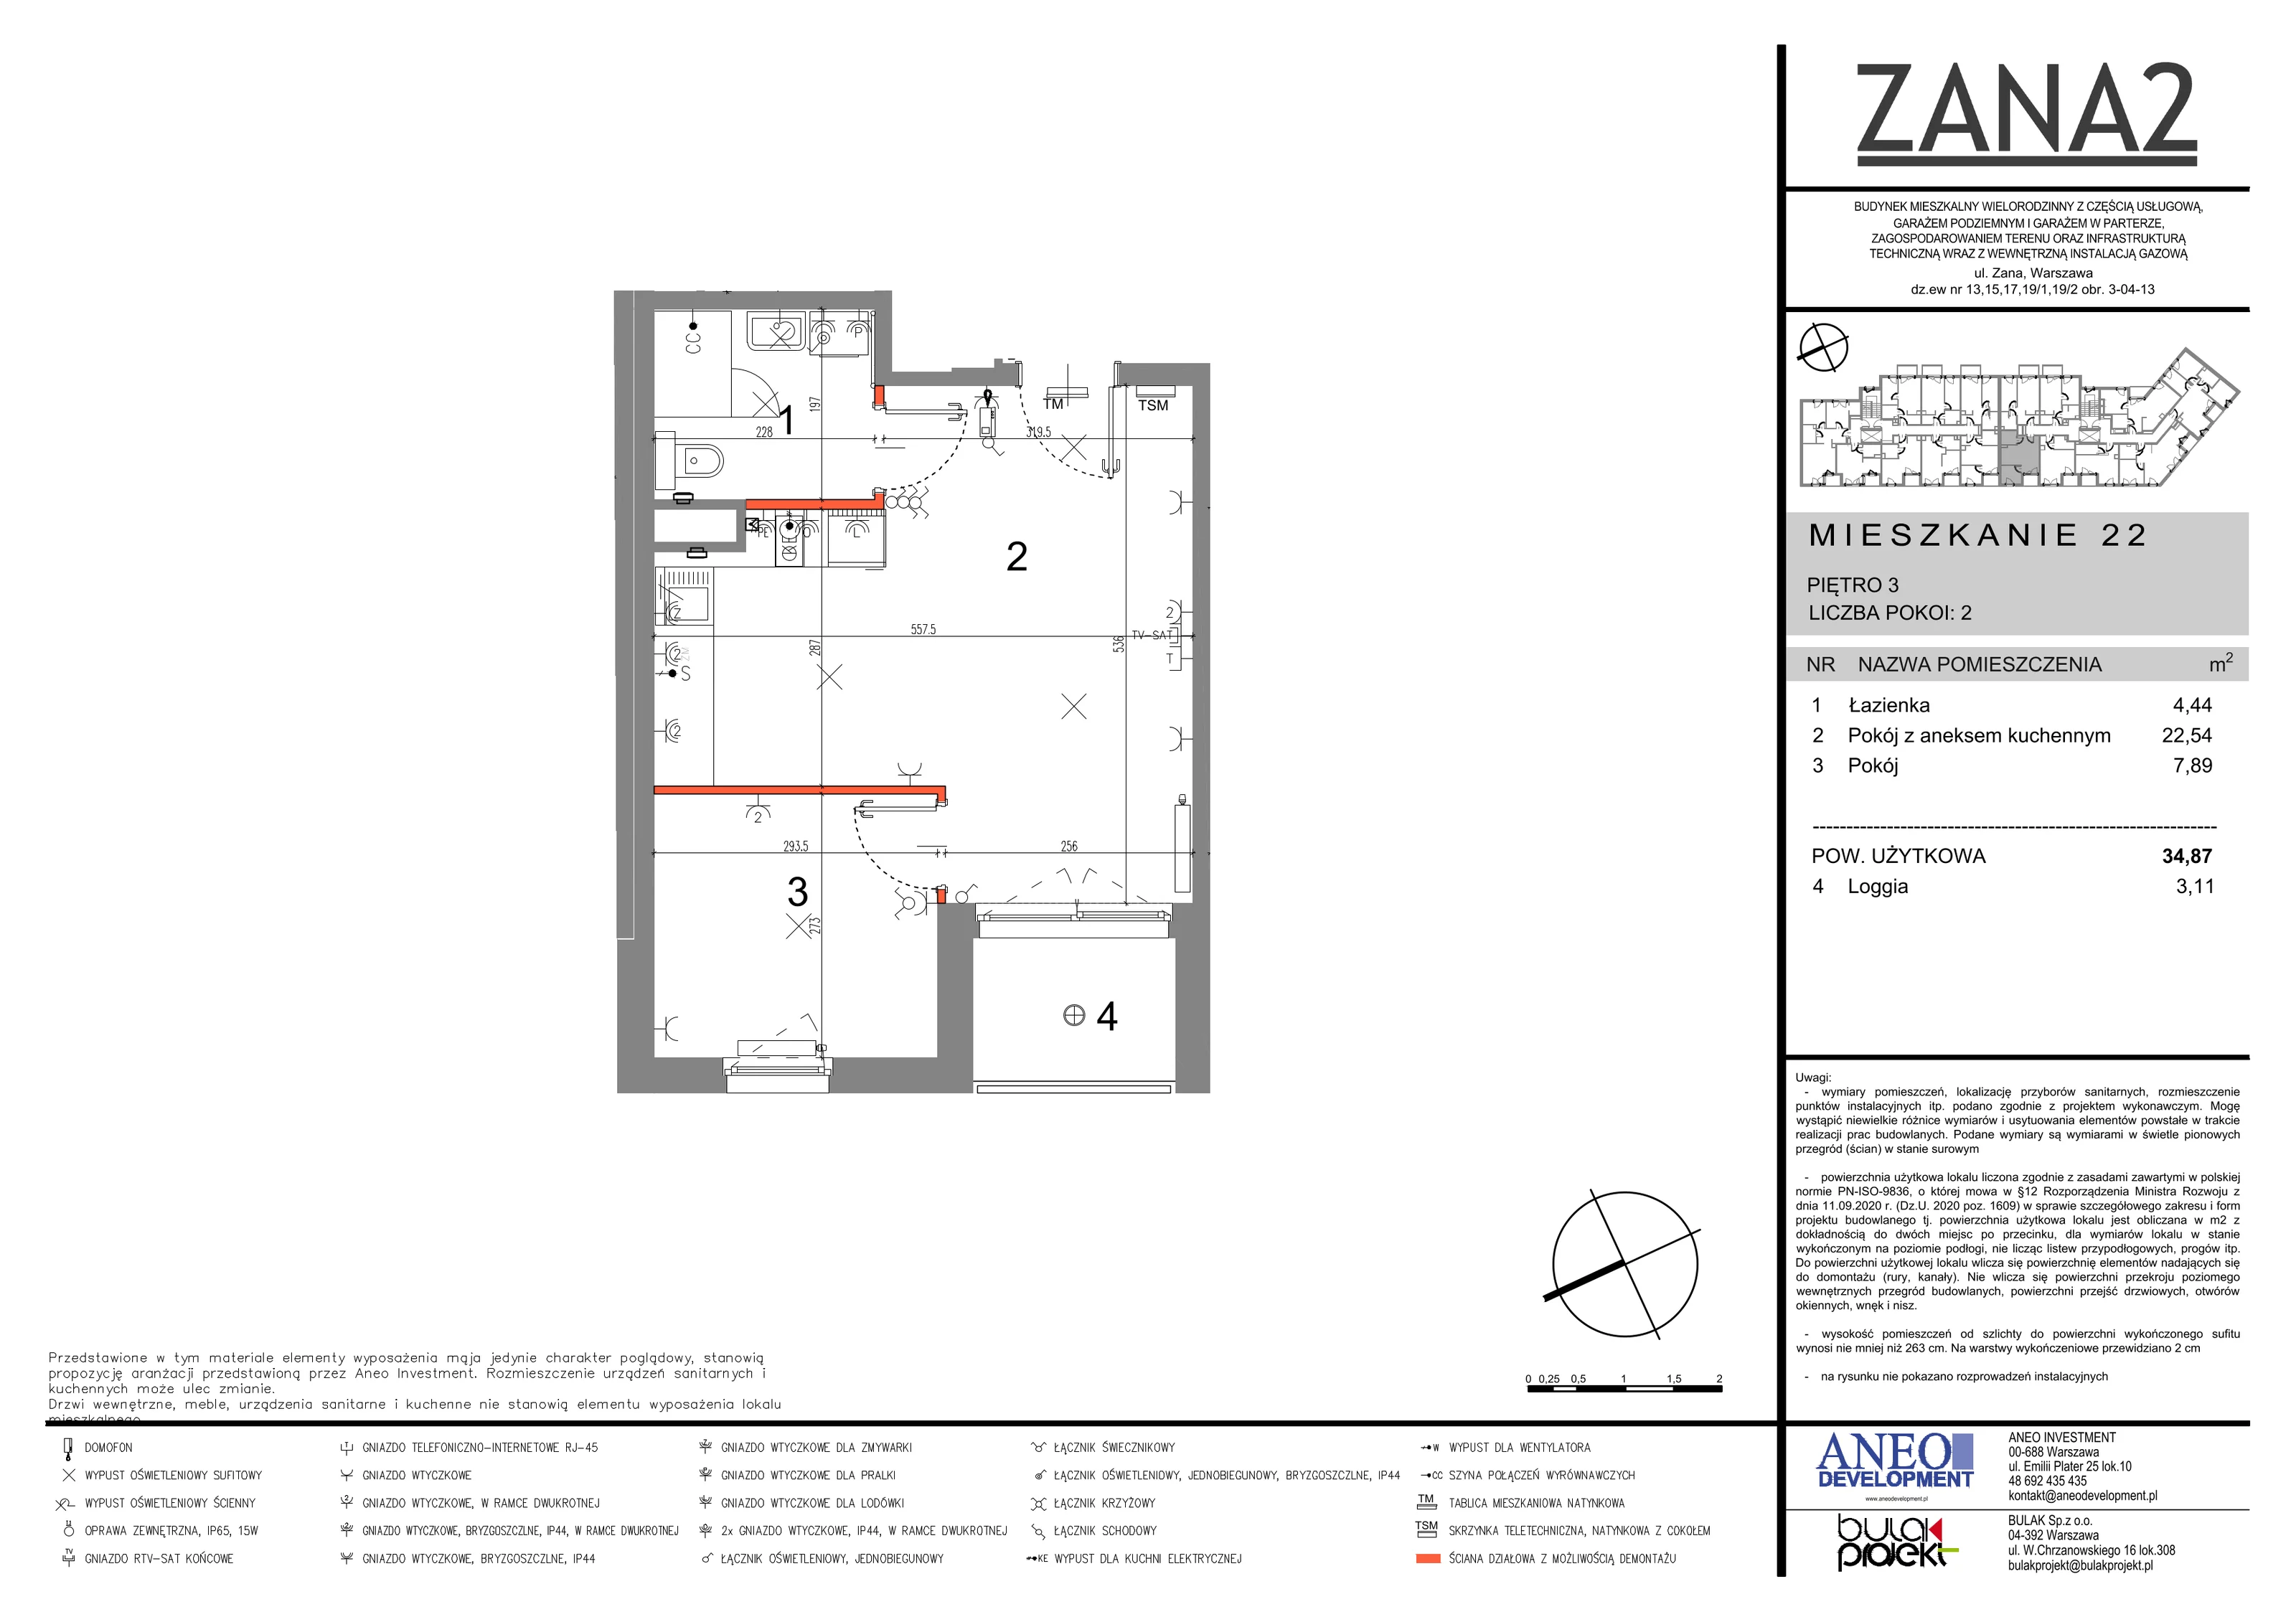 Mieszkanie 34,87 m², piętro 3, oferta nr 22, Zana 2, Warszawa, Praga Południe, Gocławek, ul. Tomasza Zana